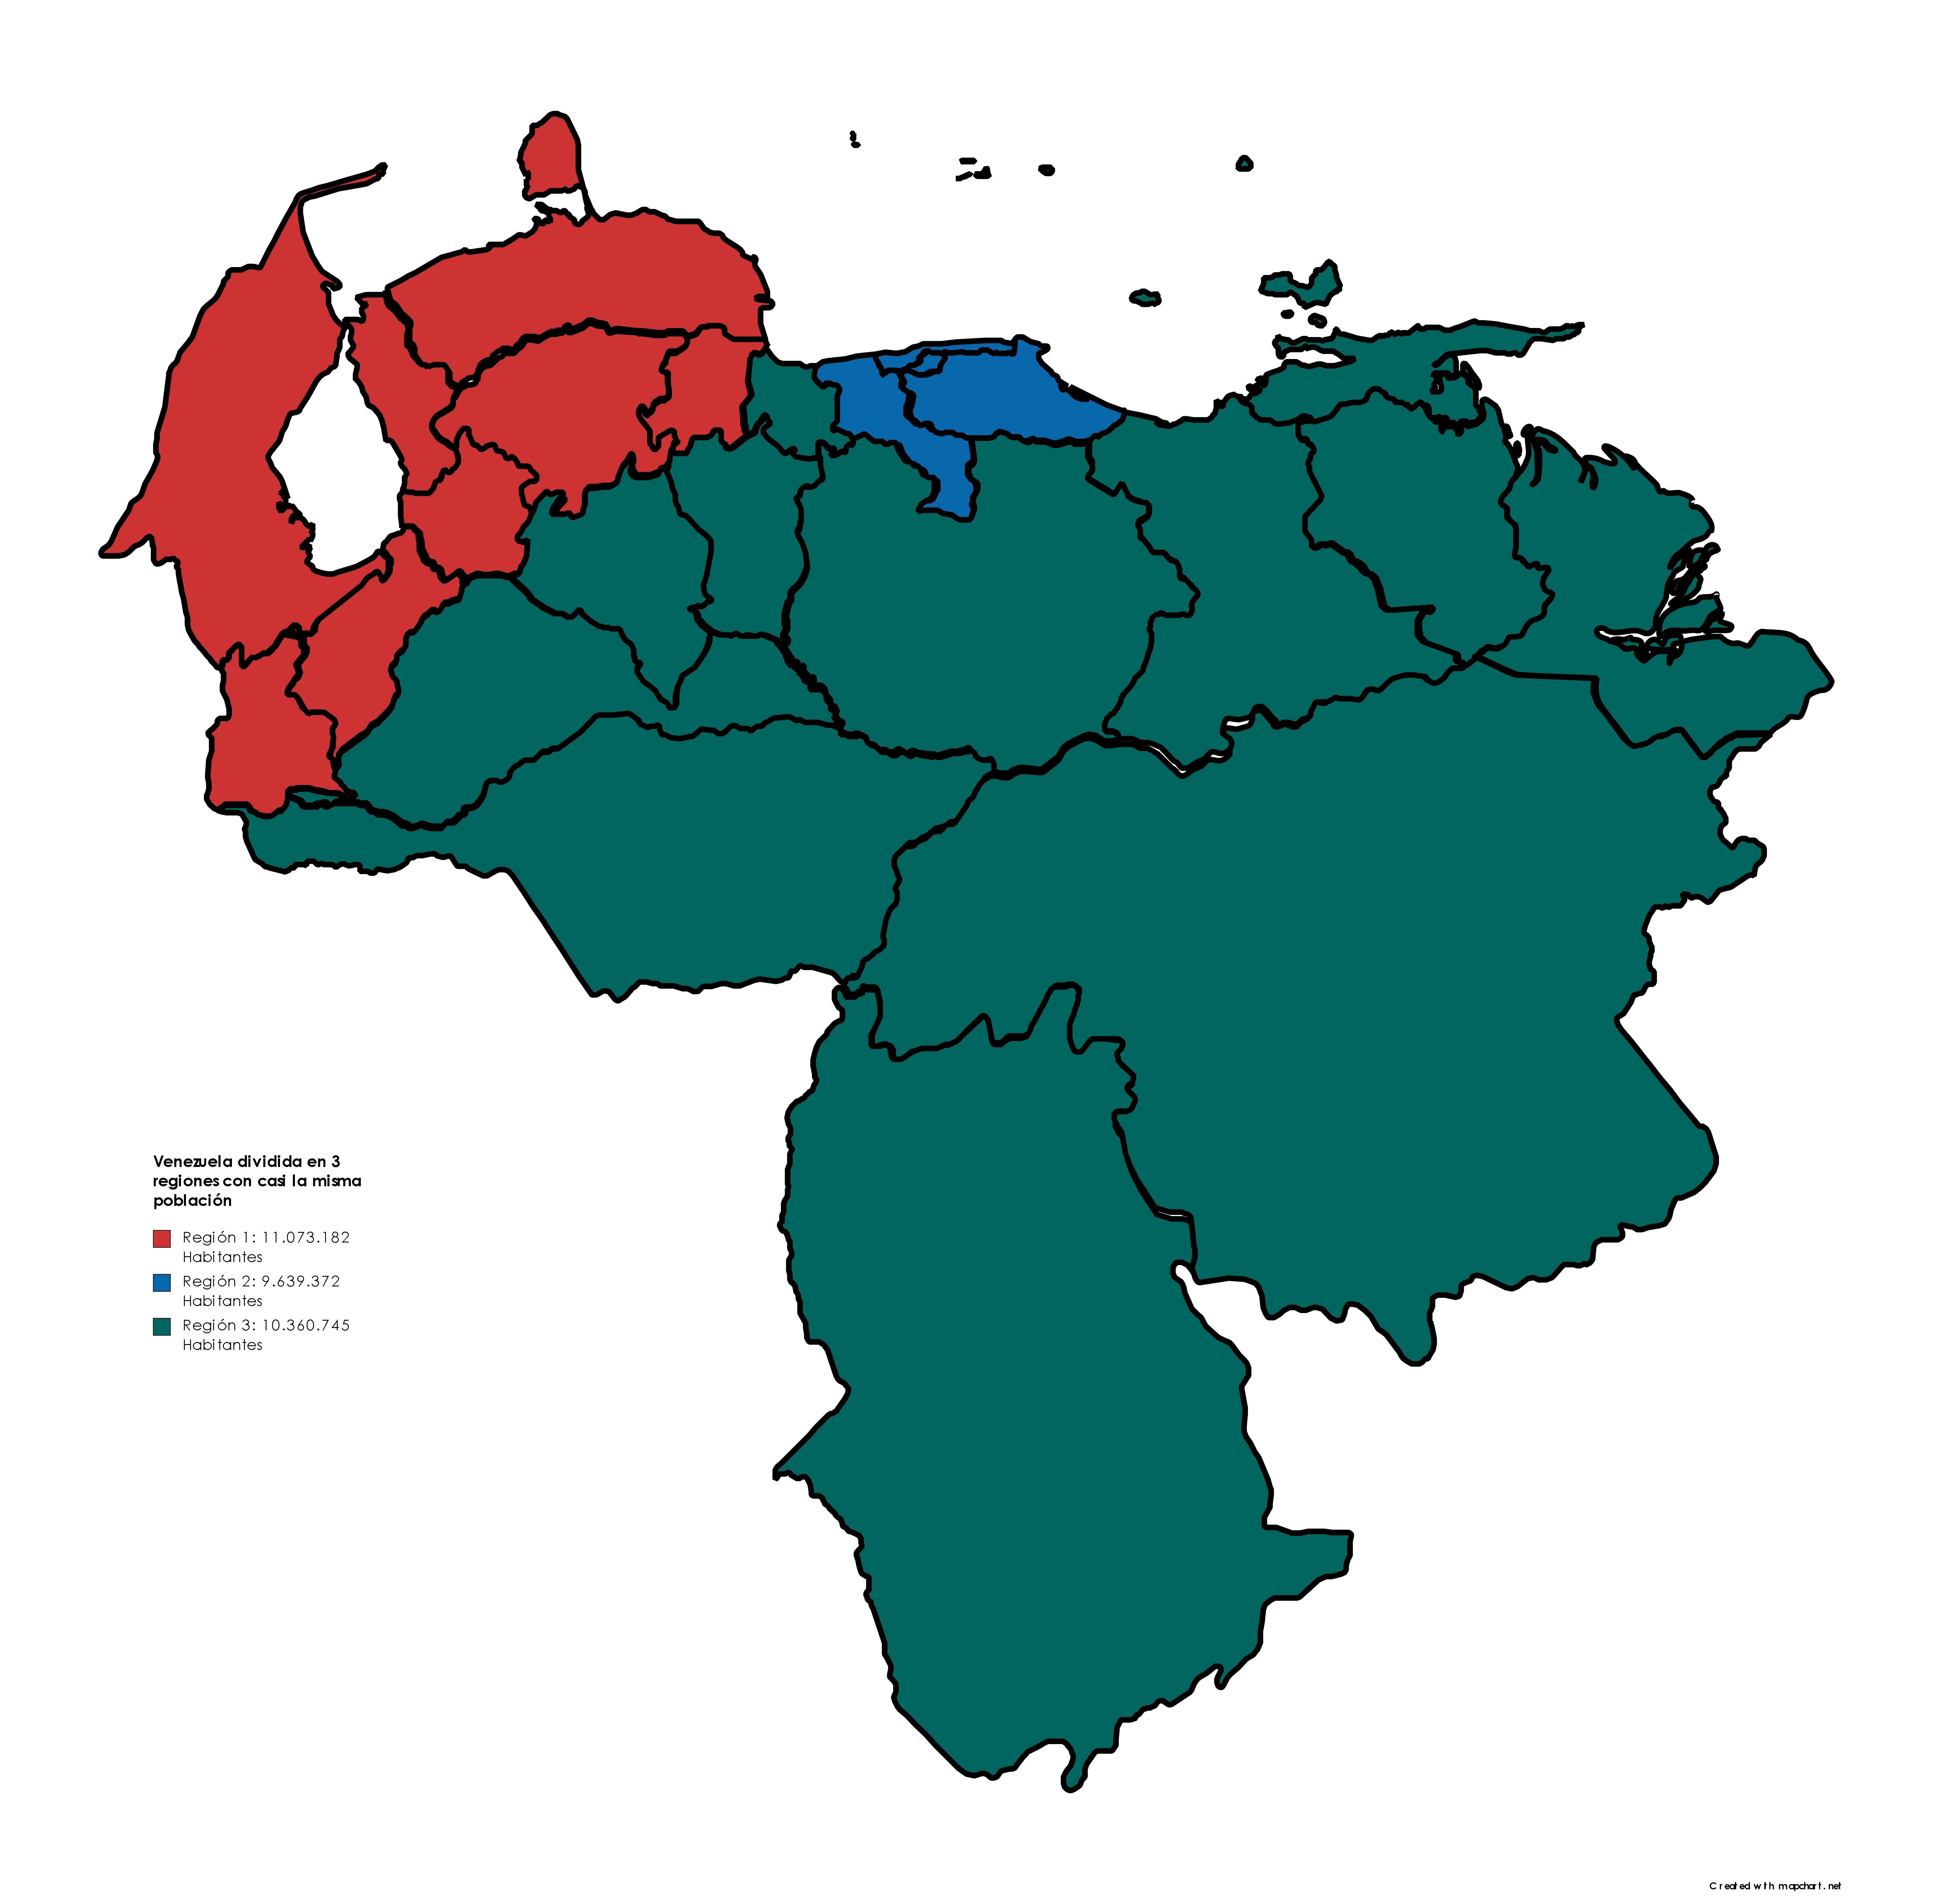 Venezuela dividida en 3 regiones con casi la misma población : r/vzla